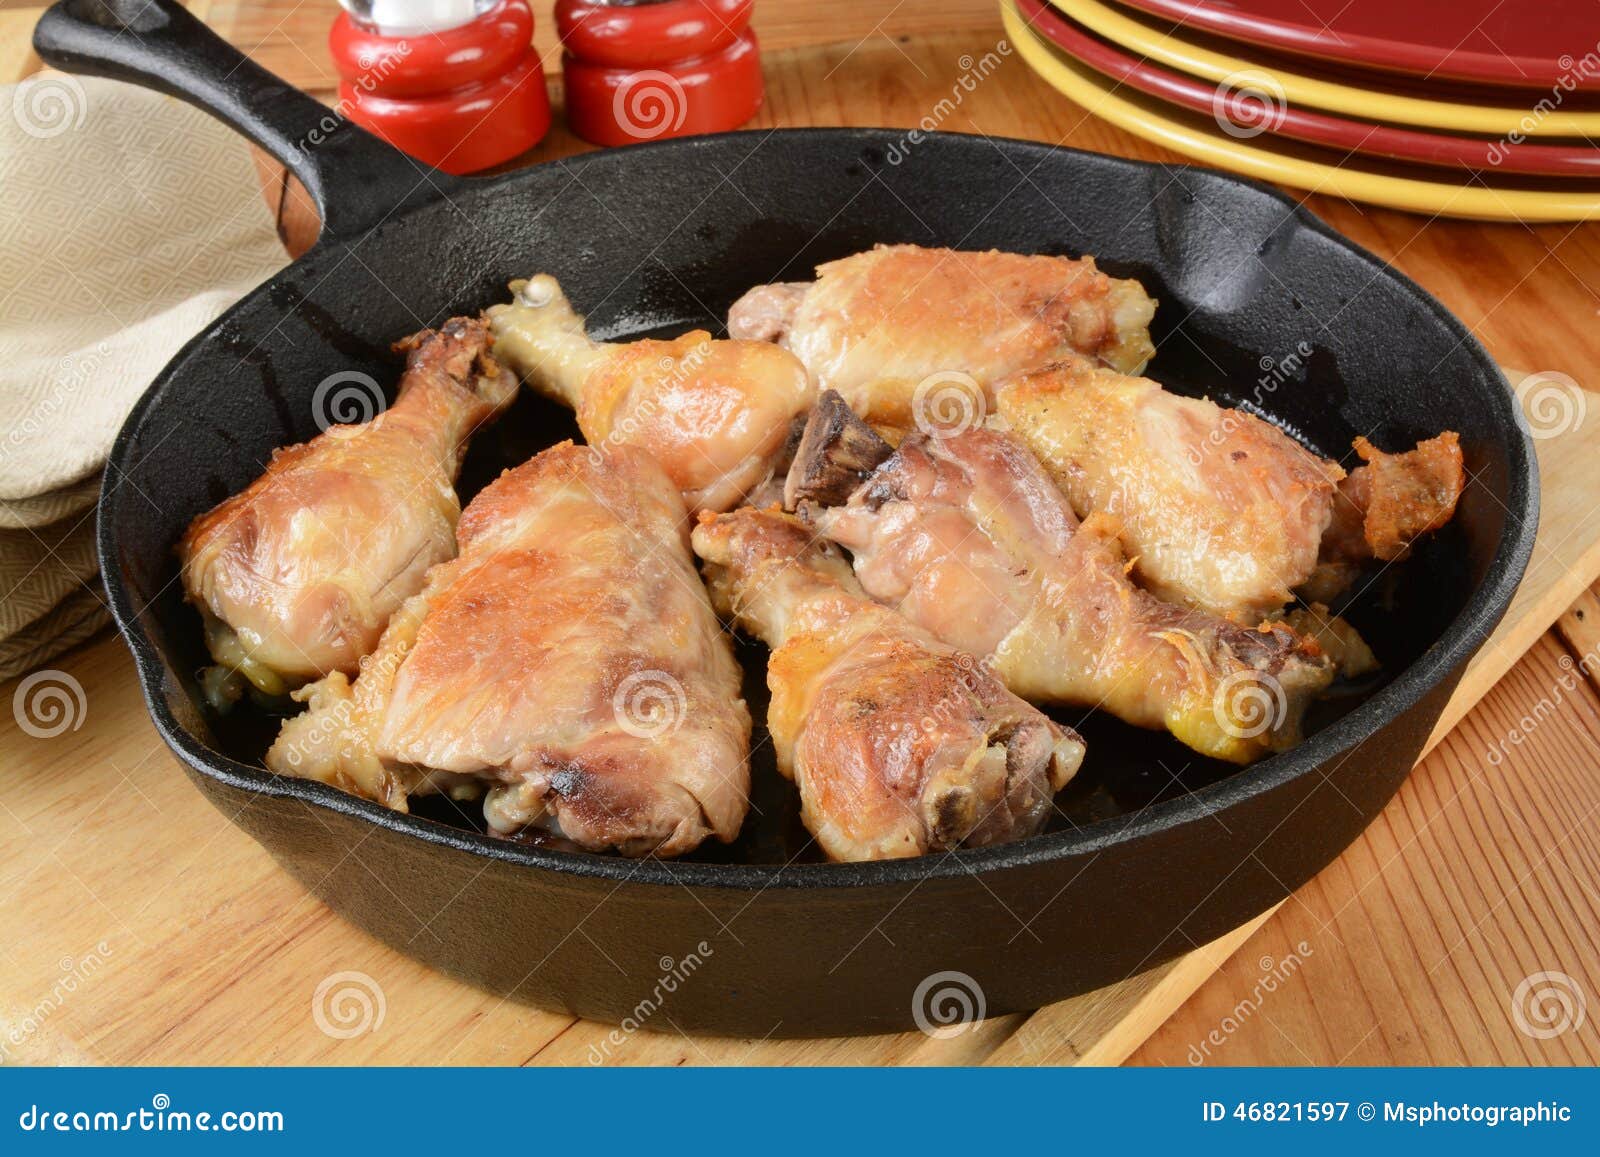 Курица на сковороде сочная и мягкая. Курица на сковороде. Сковородка с курицей. Сырая курица на сковороде. Обжариваем куриные бёдрышки до золотистого цвета.